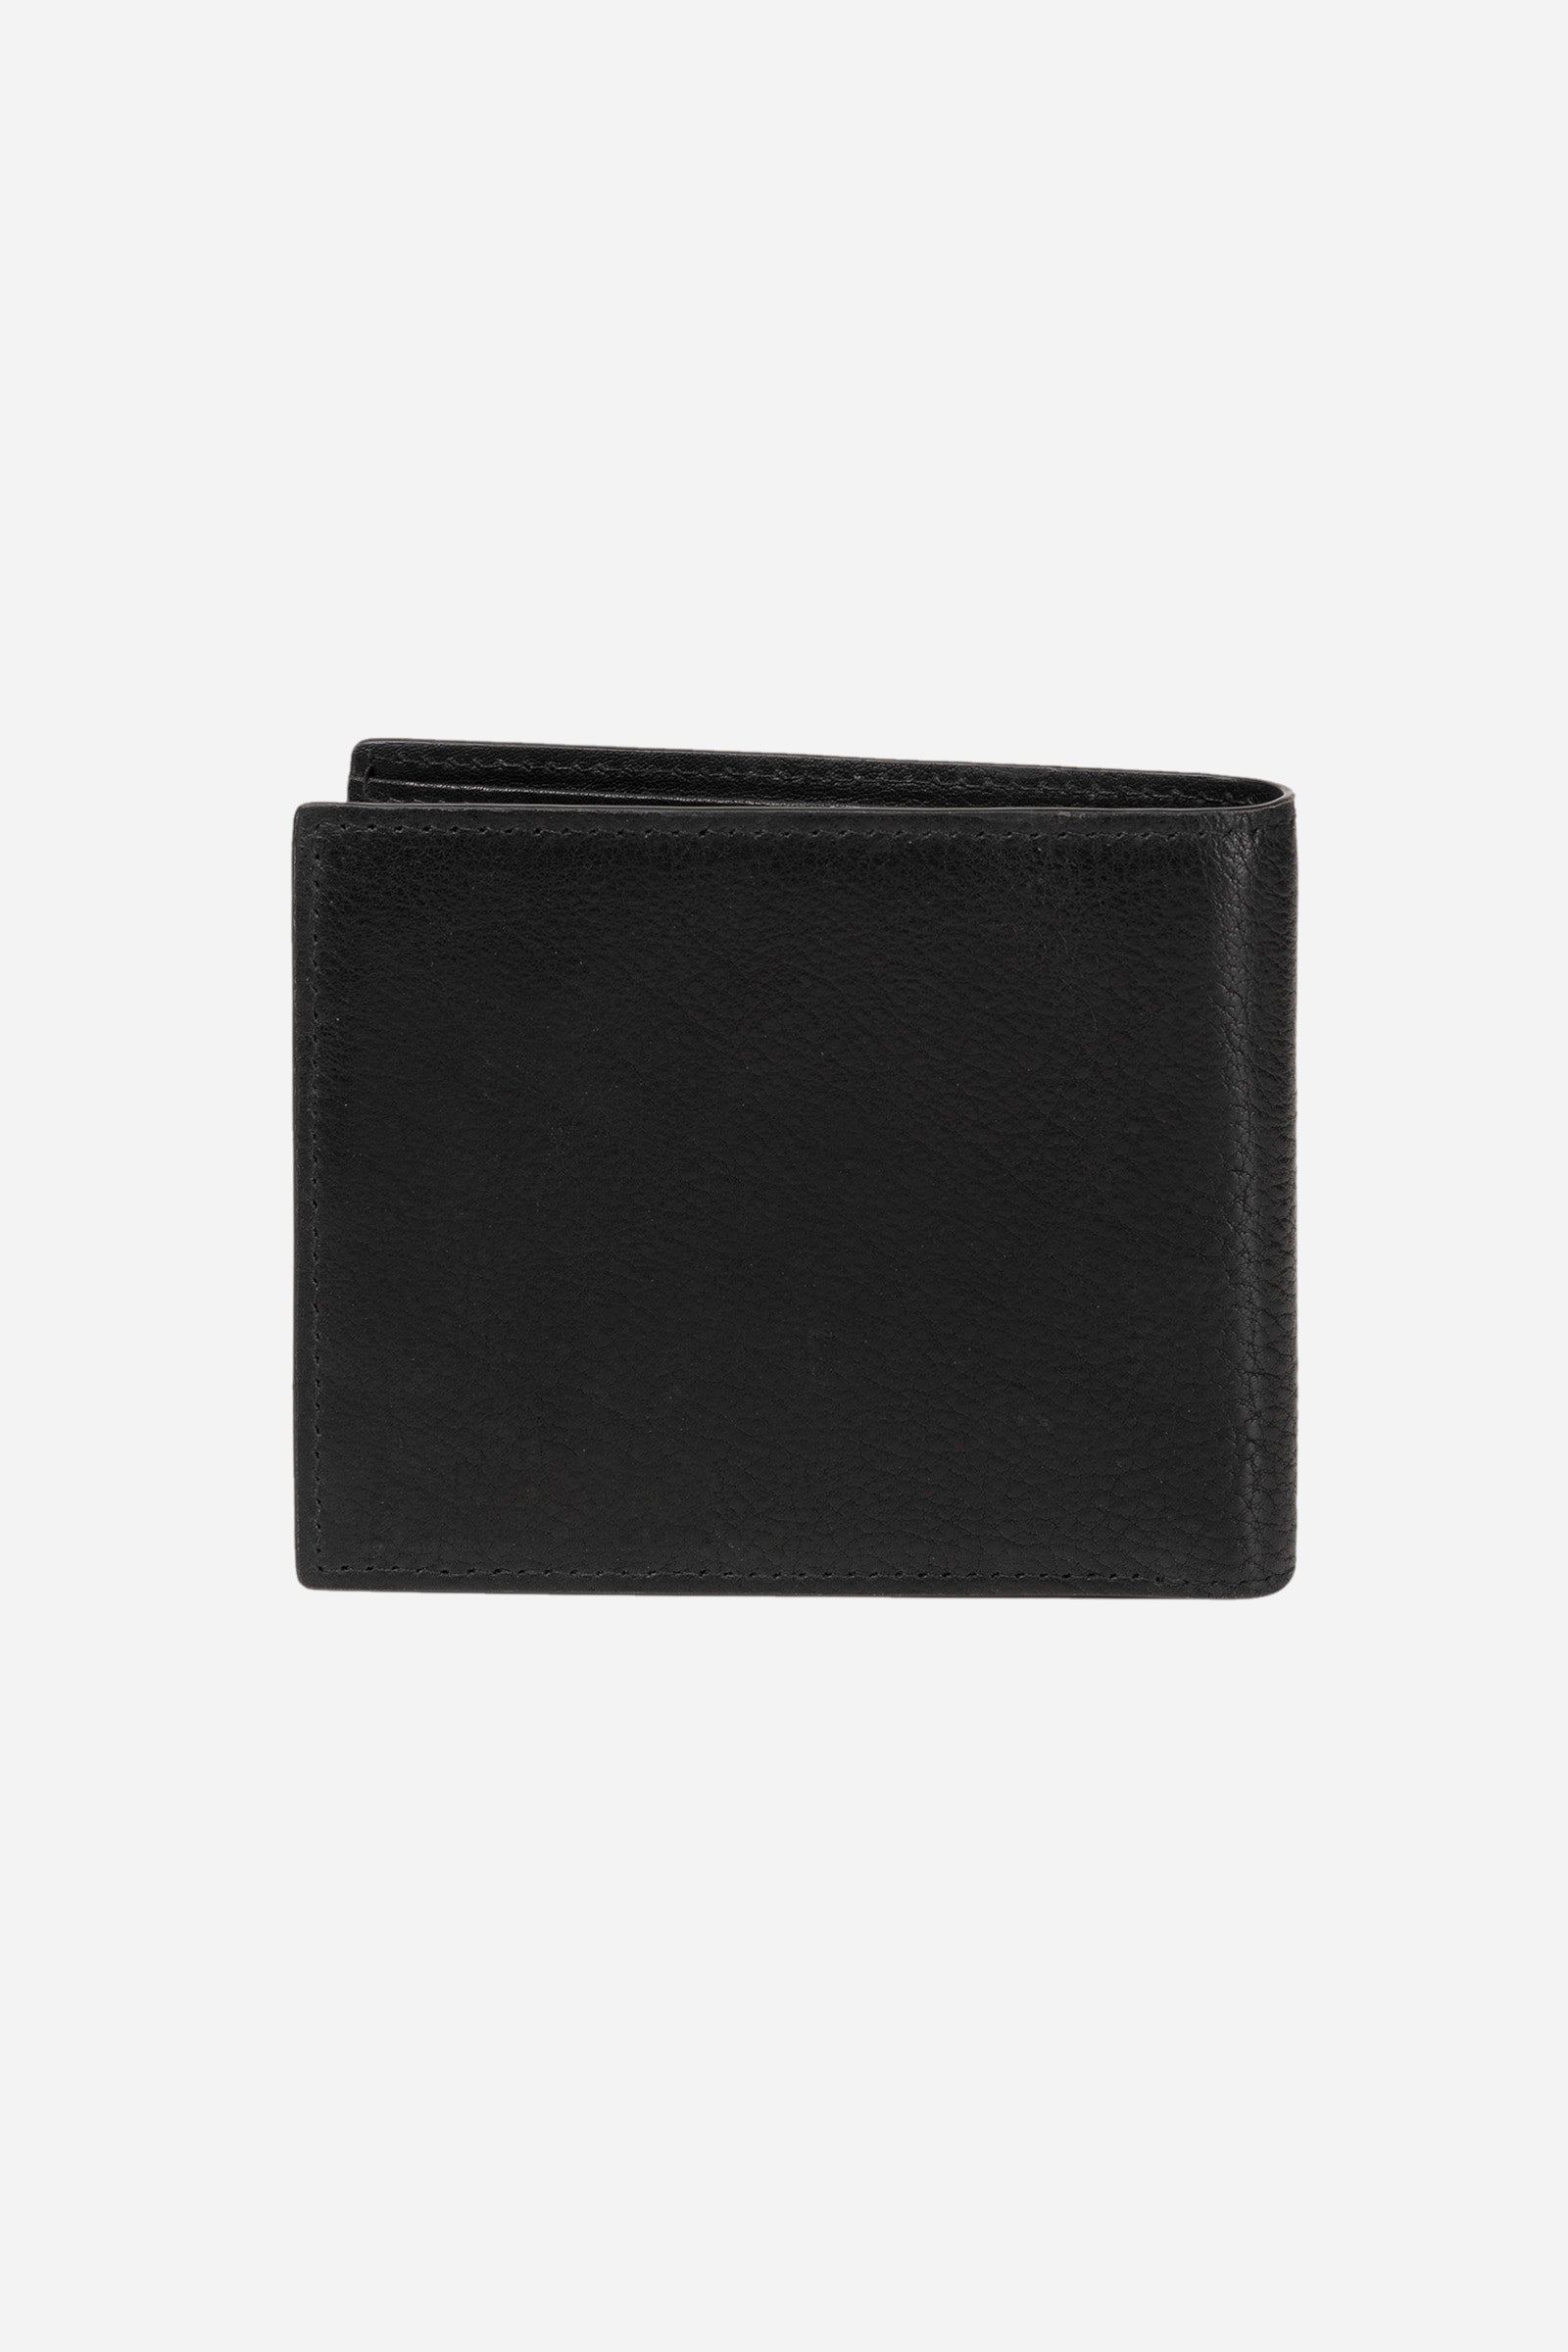 Men's leather wallet - Paulo